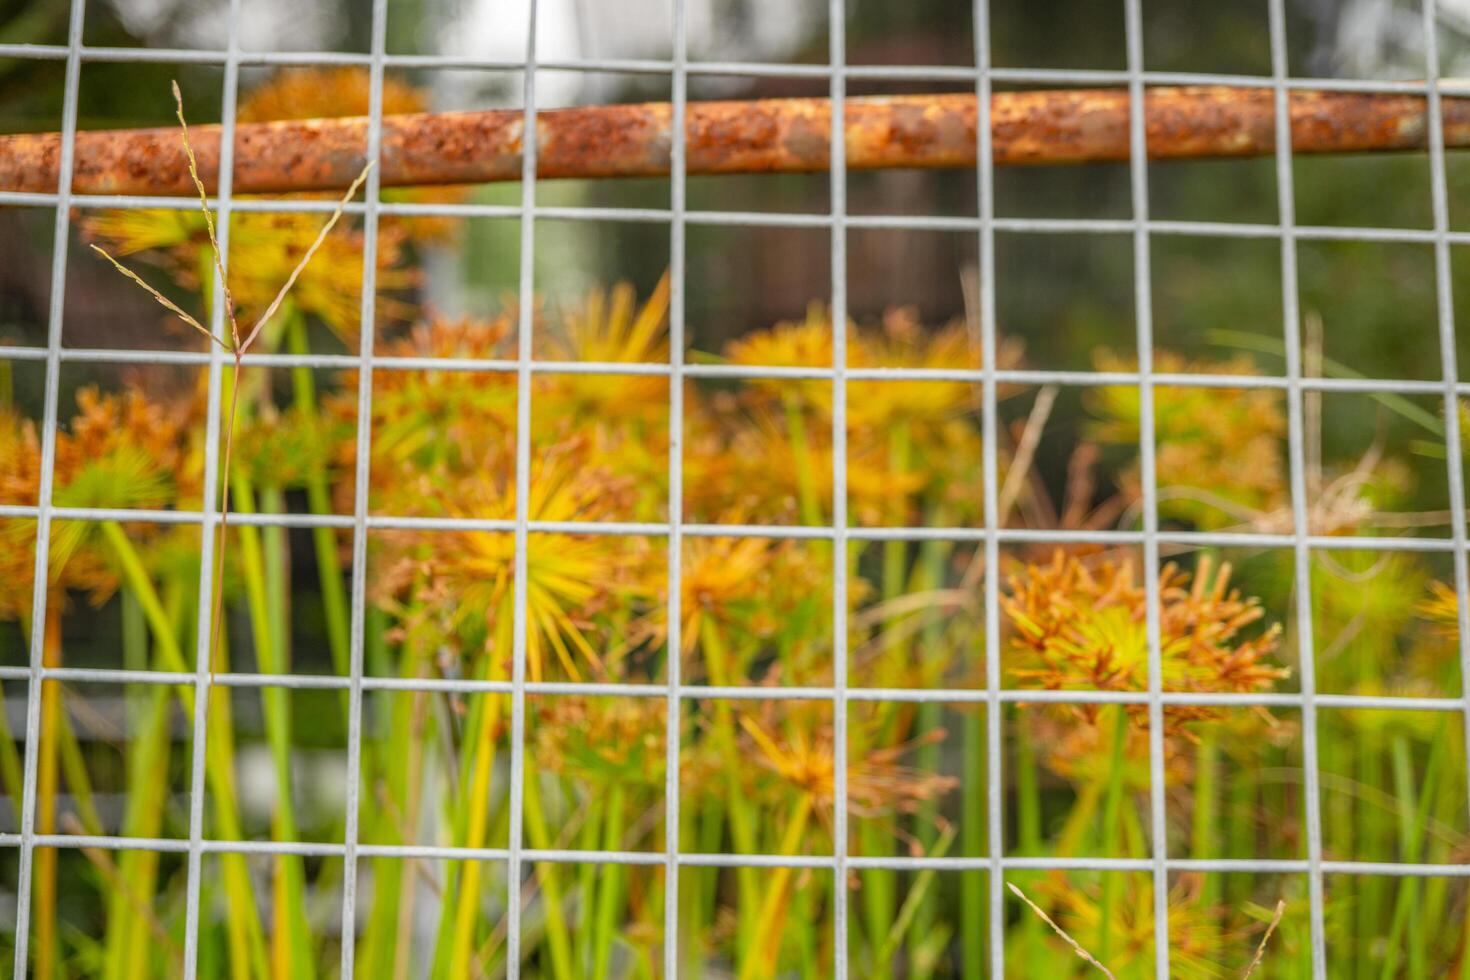 dekorativ Pflanze Cyperus Papyrus auf das Grün Garten. das Foto ist geeignet zu verwenden zum botanisch Hintergrund, Natur Poster und Flora Bildung Inhalt Medien.